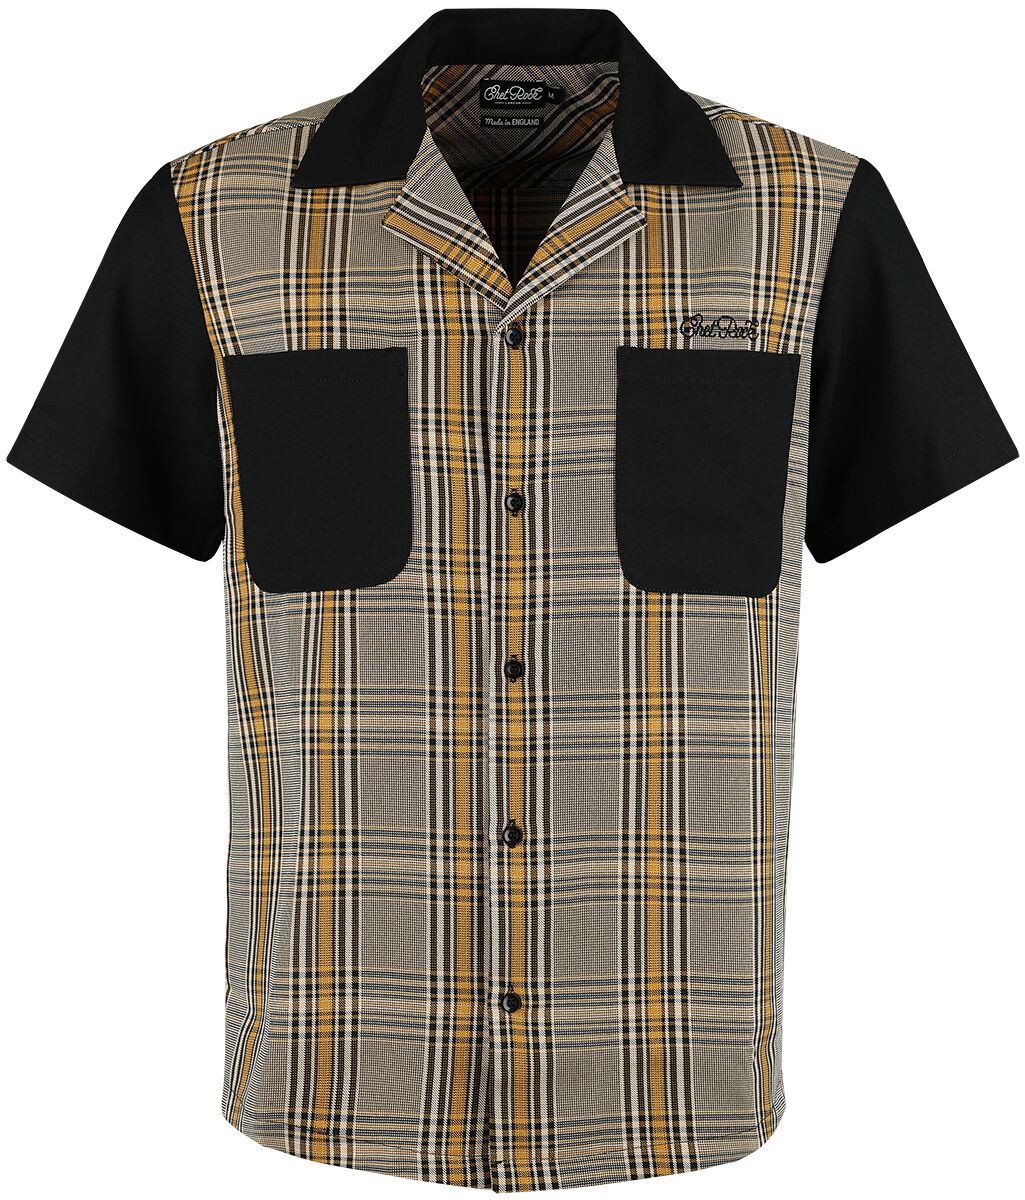 Image of Camicia Maniche Corte Rockabilly di Chet Rock - Douglas Shirt - S a XXL - Uomo - multicolore